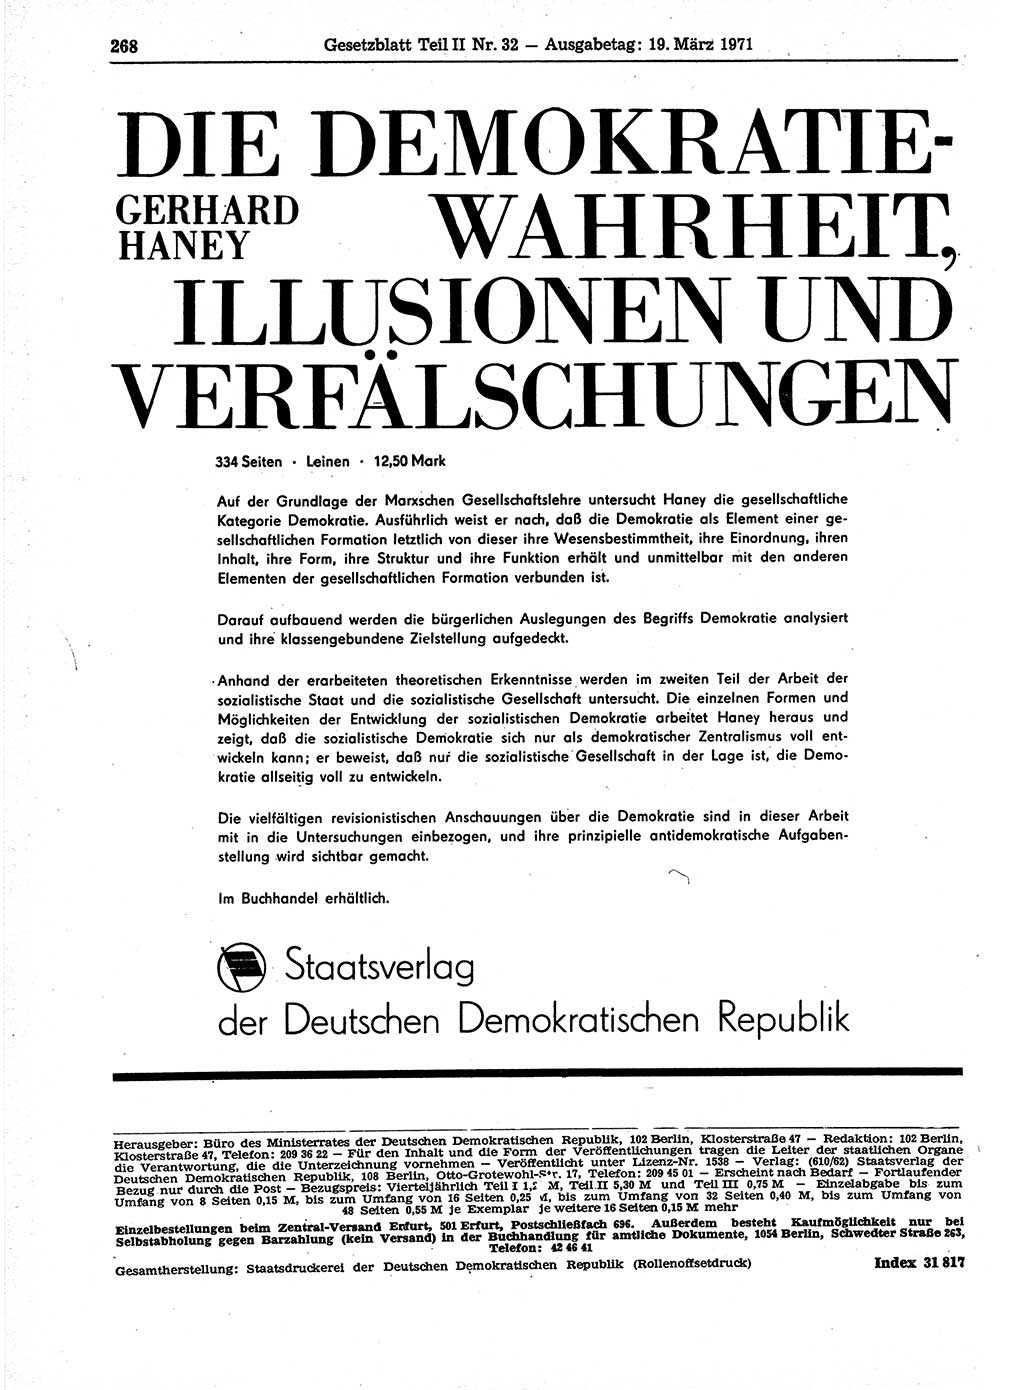 Gesetzblatt (GBl.) der Deutschen Demokratischen Republik (DDR) Teil ⅠⅠ 1971, Seite 268 (GBl. DDR ⅠⅠ 1971, S. 268)